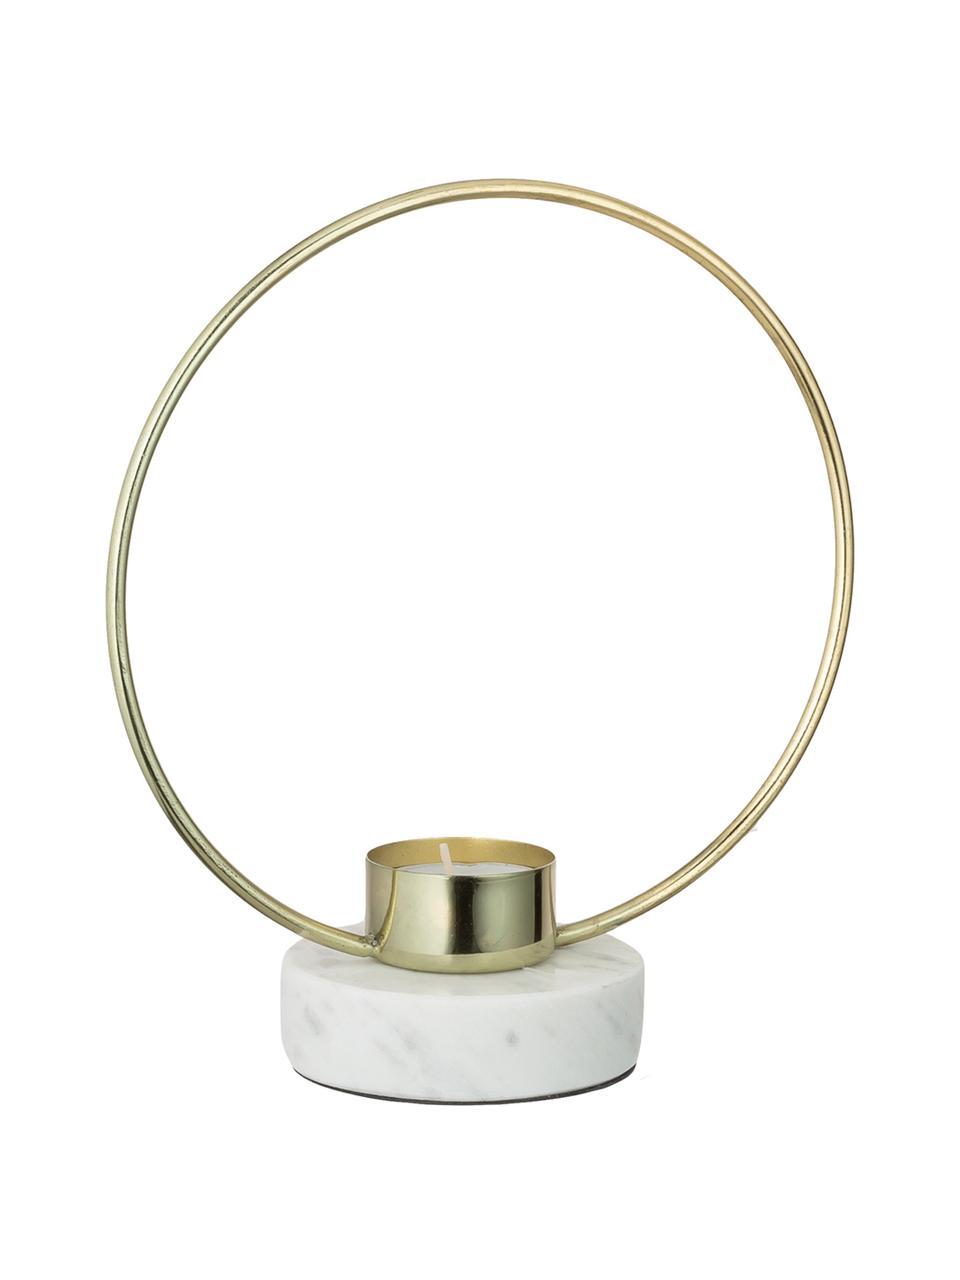 Teelichthalter Golden Ring, Goldfarben, Weiss, B 18 x H 20 cm